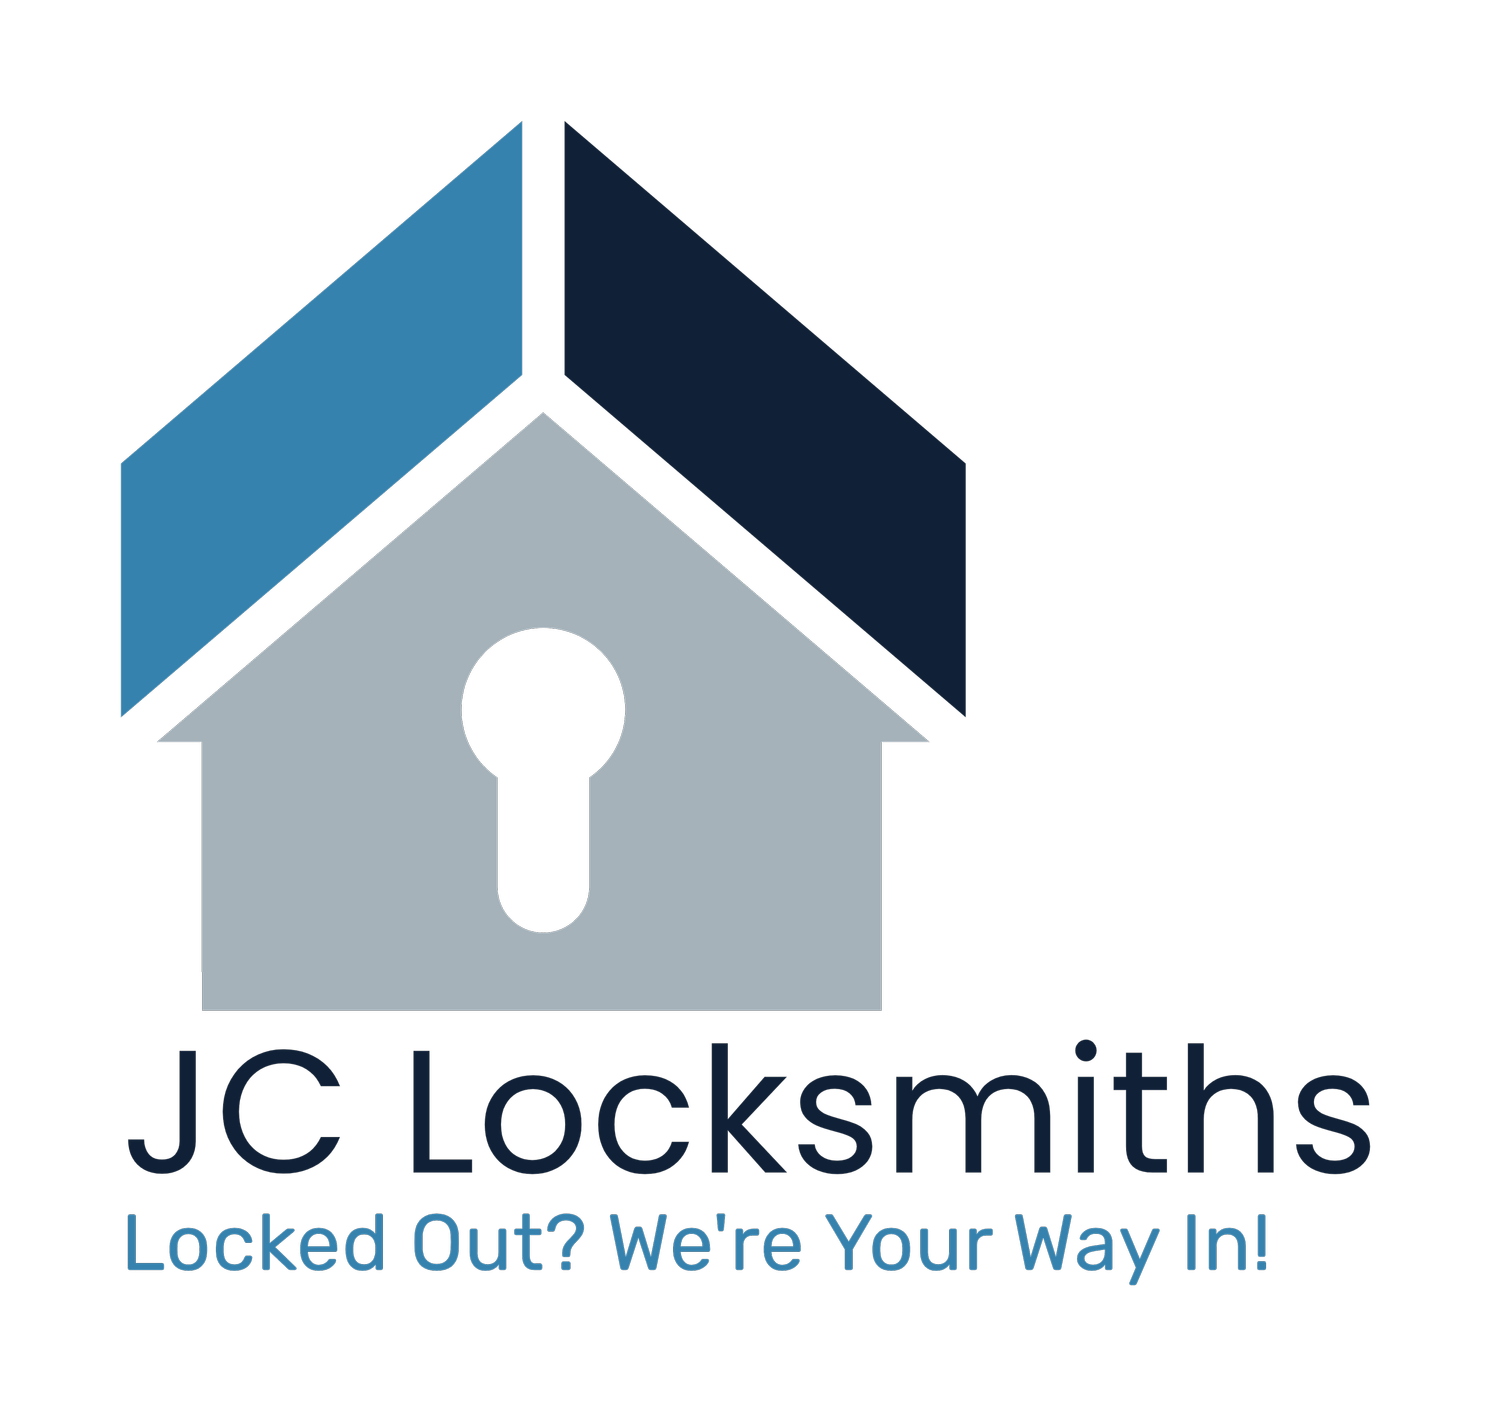 JC Locksmiths